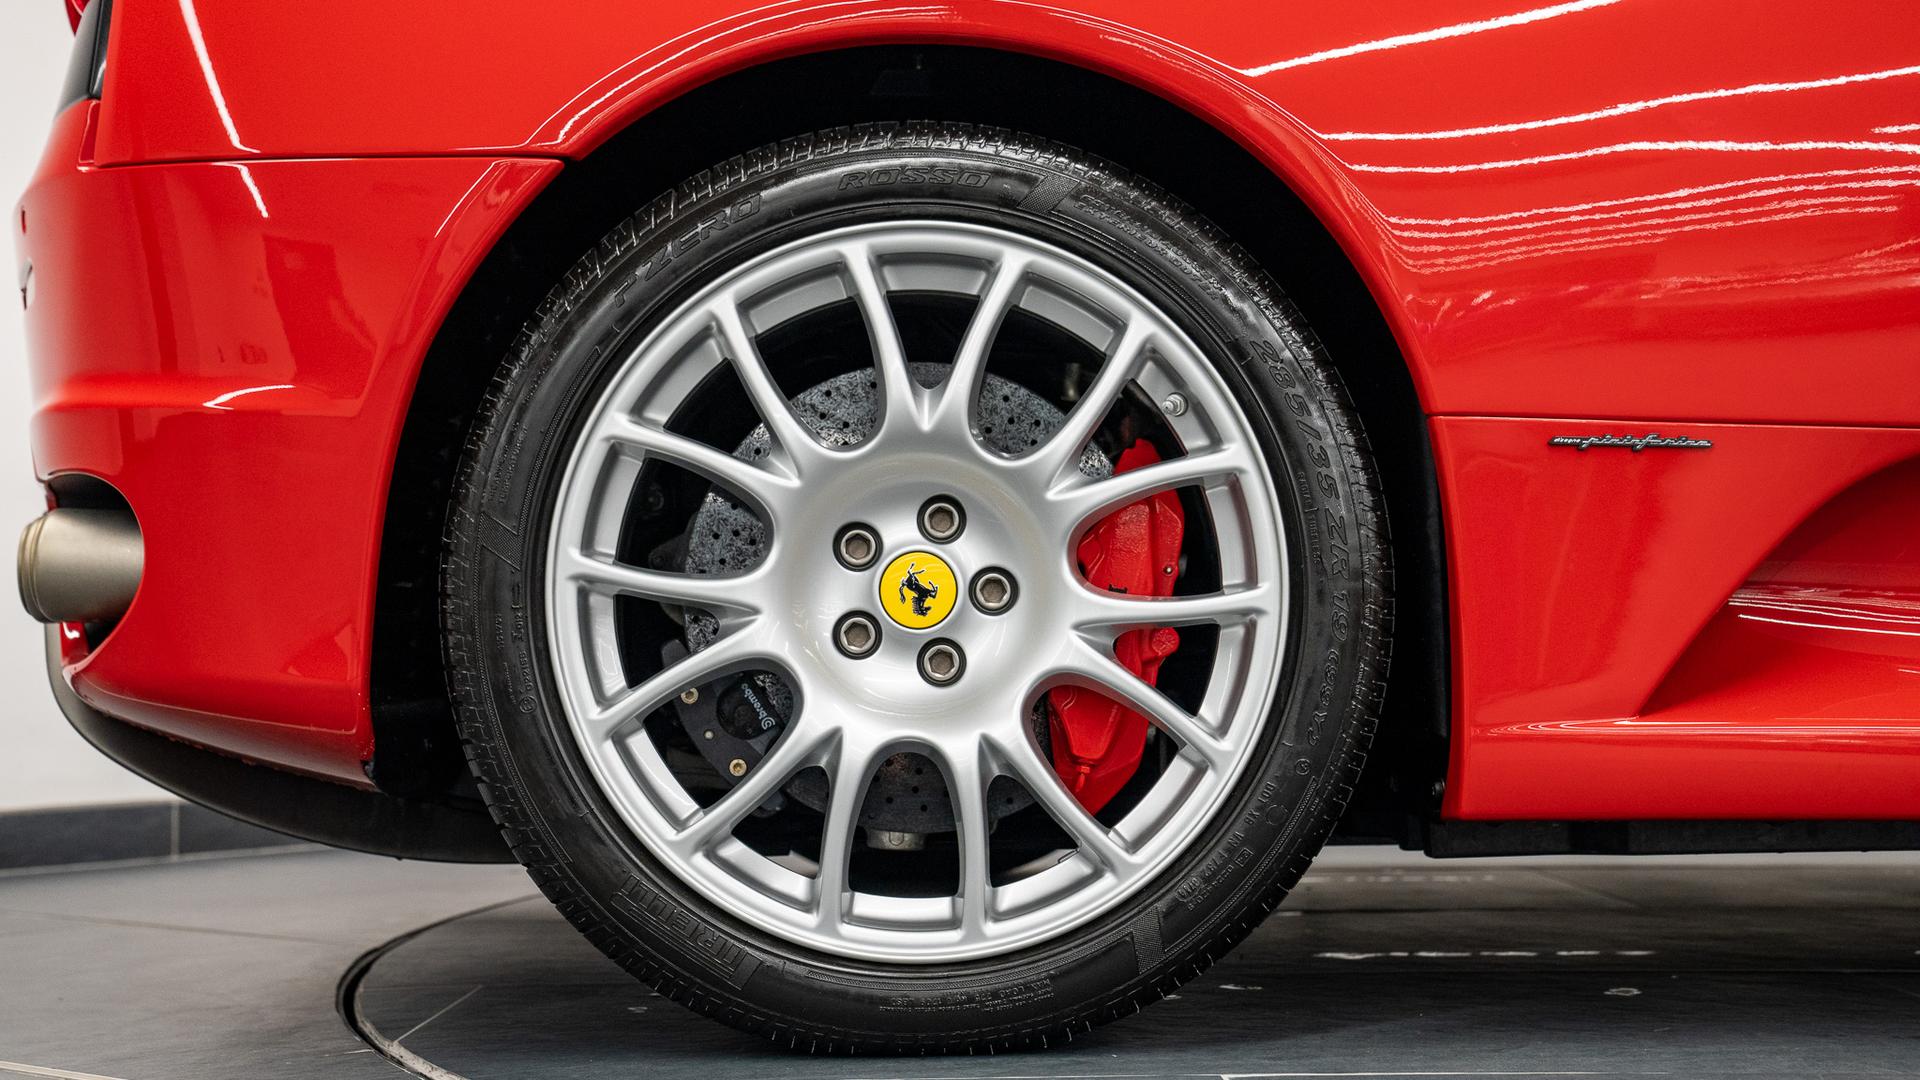 Ferrari F430 Spider Photo 1cdbf36a-ba1e-4da4-8b6f-b764e08b30d1.jpg